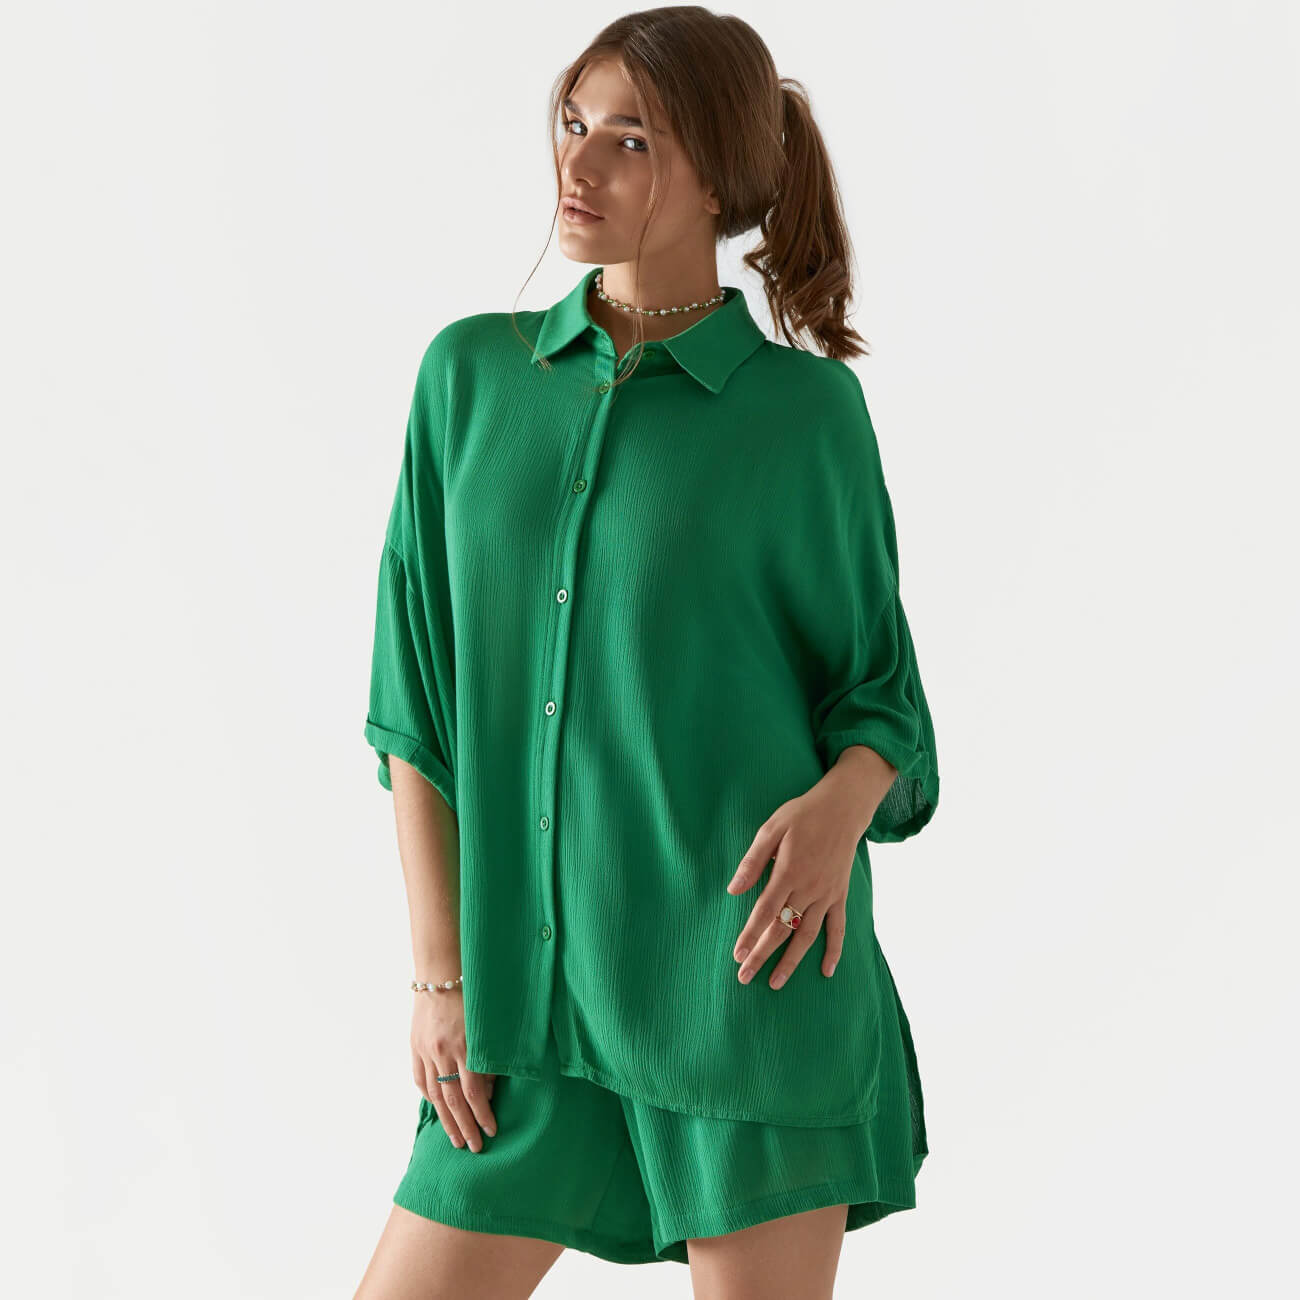 Рубашка женская, р. XL, с коротким рукавом, вискоза, зеленая, Julie